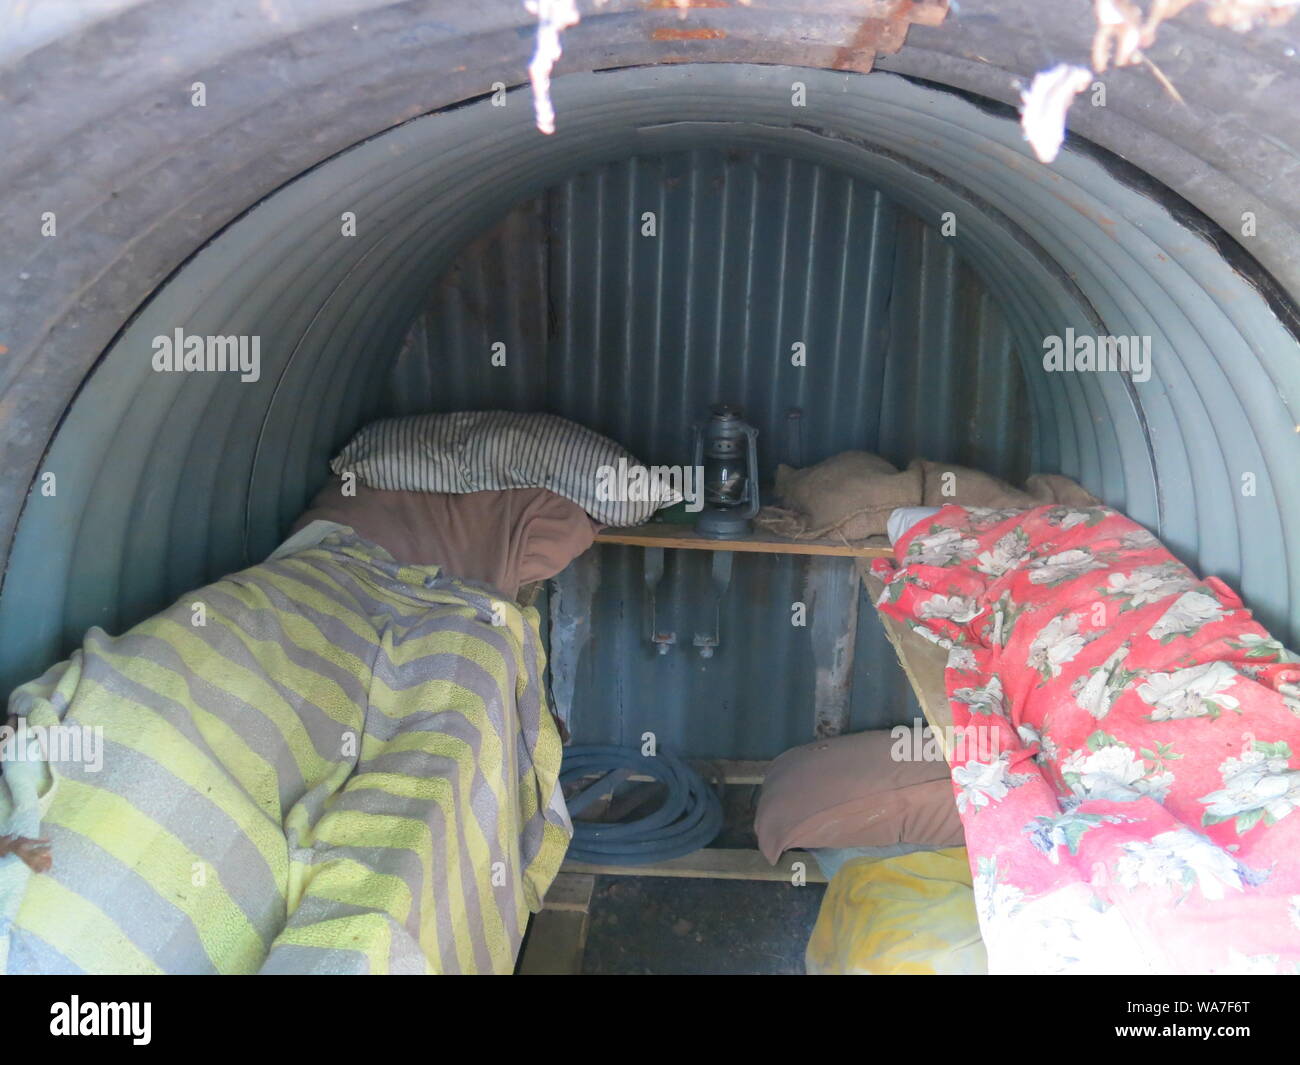 Vue intérieure d'un Anderson d'hébergement avec sac de couchage pour l'hébergement en famille d'accueil pendant les explosions de bombes de la Seconde Guerre mondiale Banque D'Images